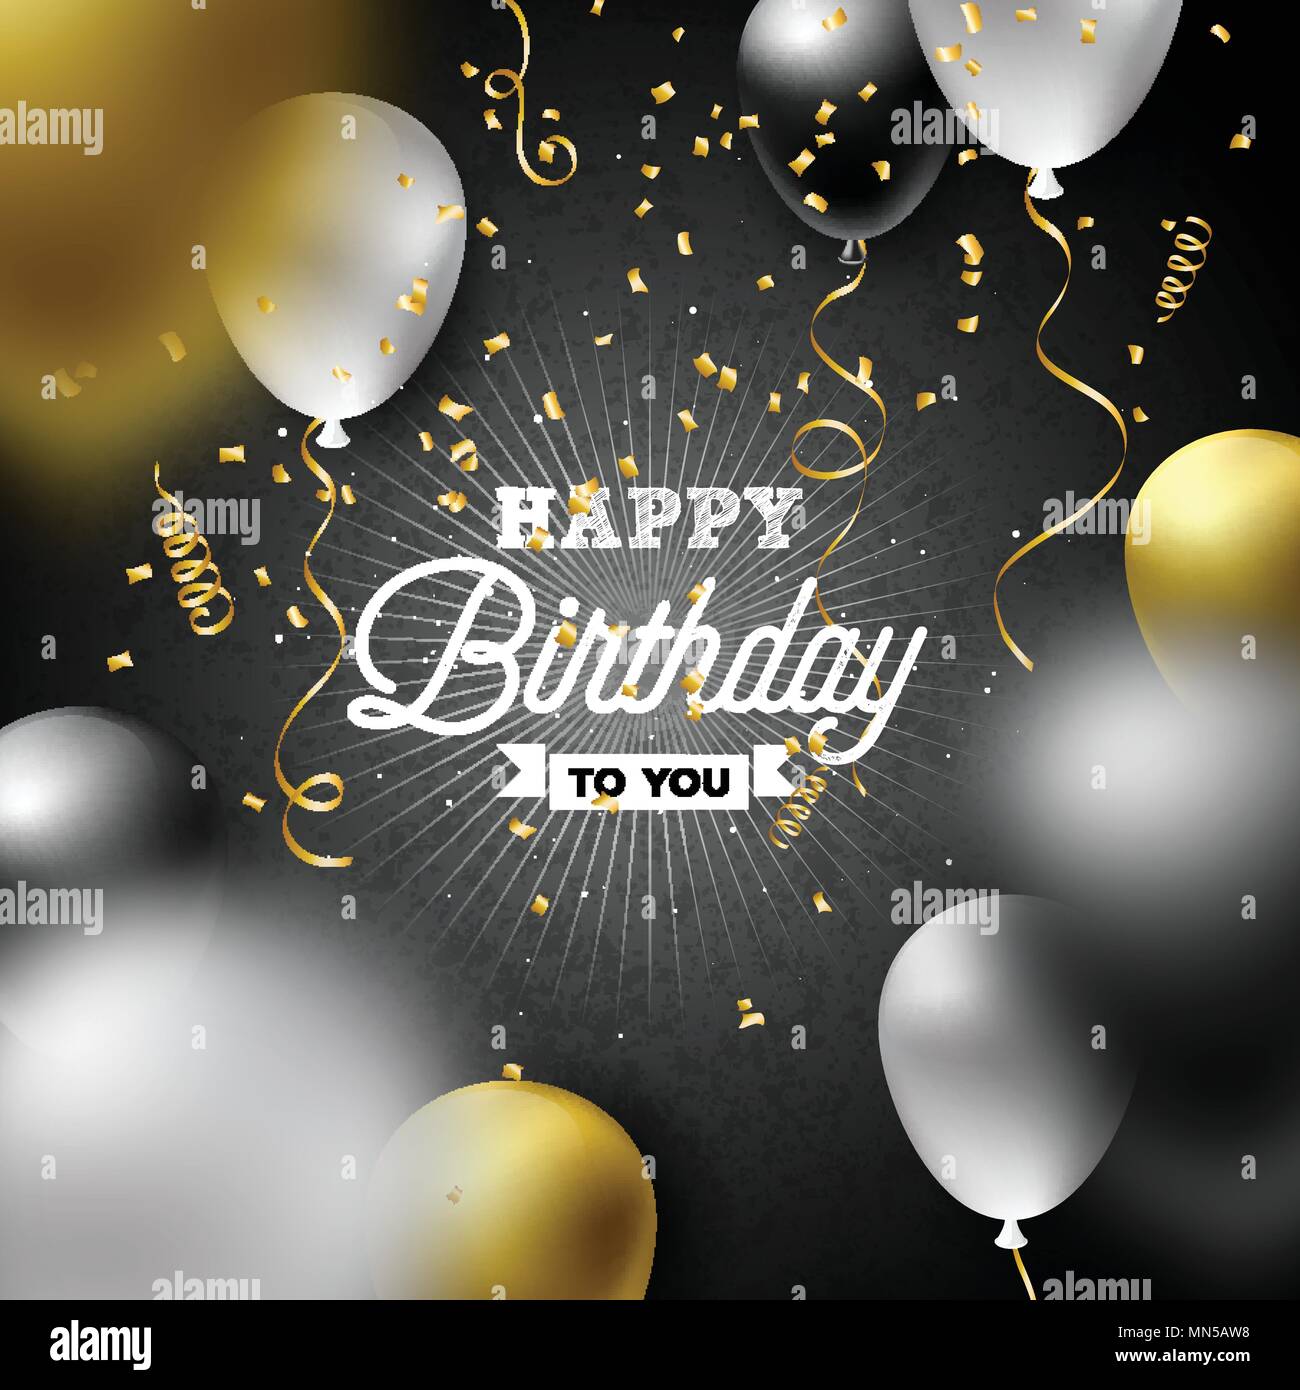 Happy Birthday Vektor Design mit Ballon, Typografie und fallende Konfetti auf dunklem Hintergrund. Abbildung für Geburtstag. Grußkarten oder Party Poster. Stock Vektor